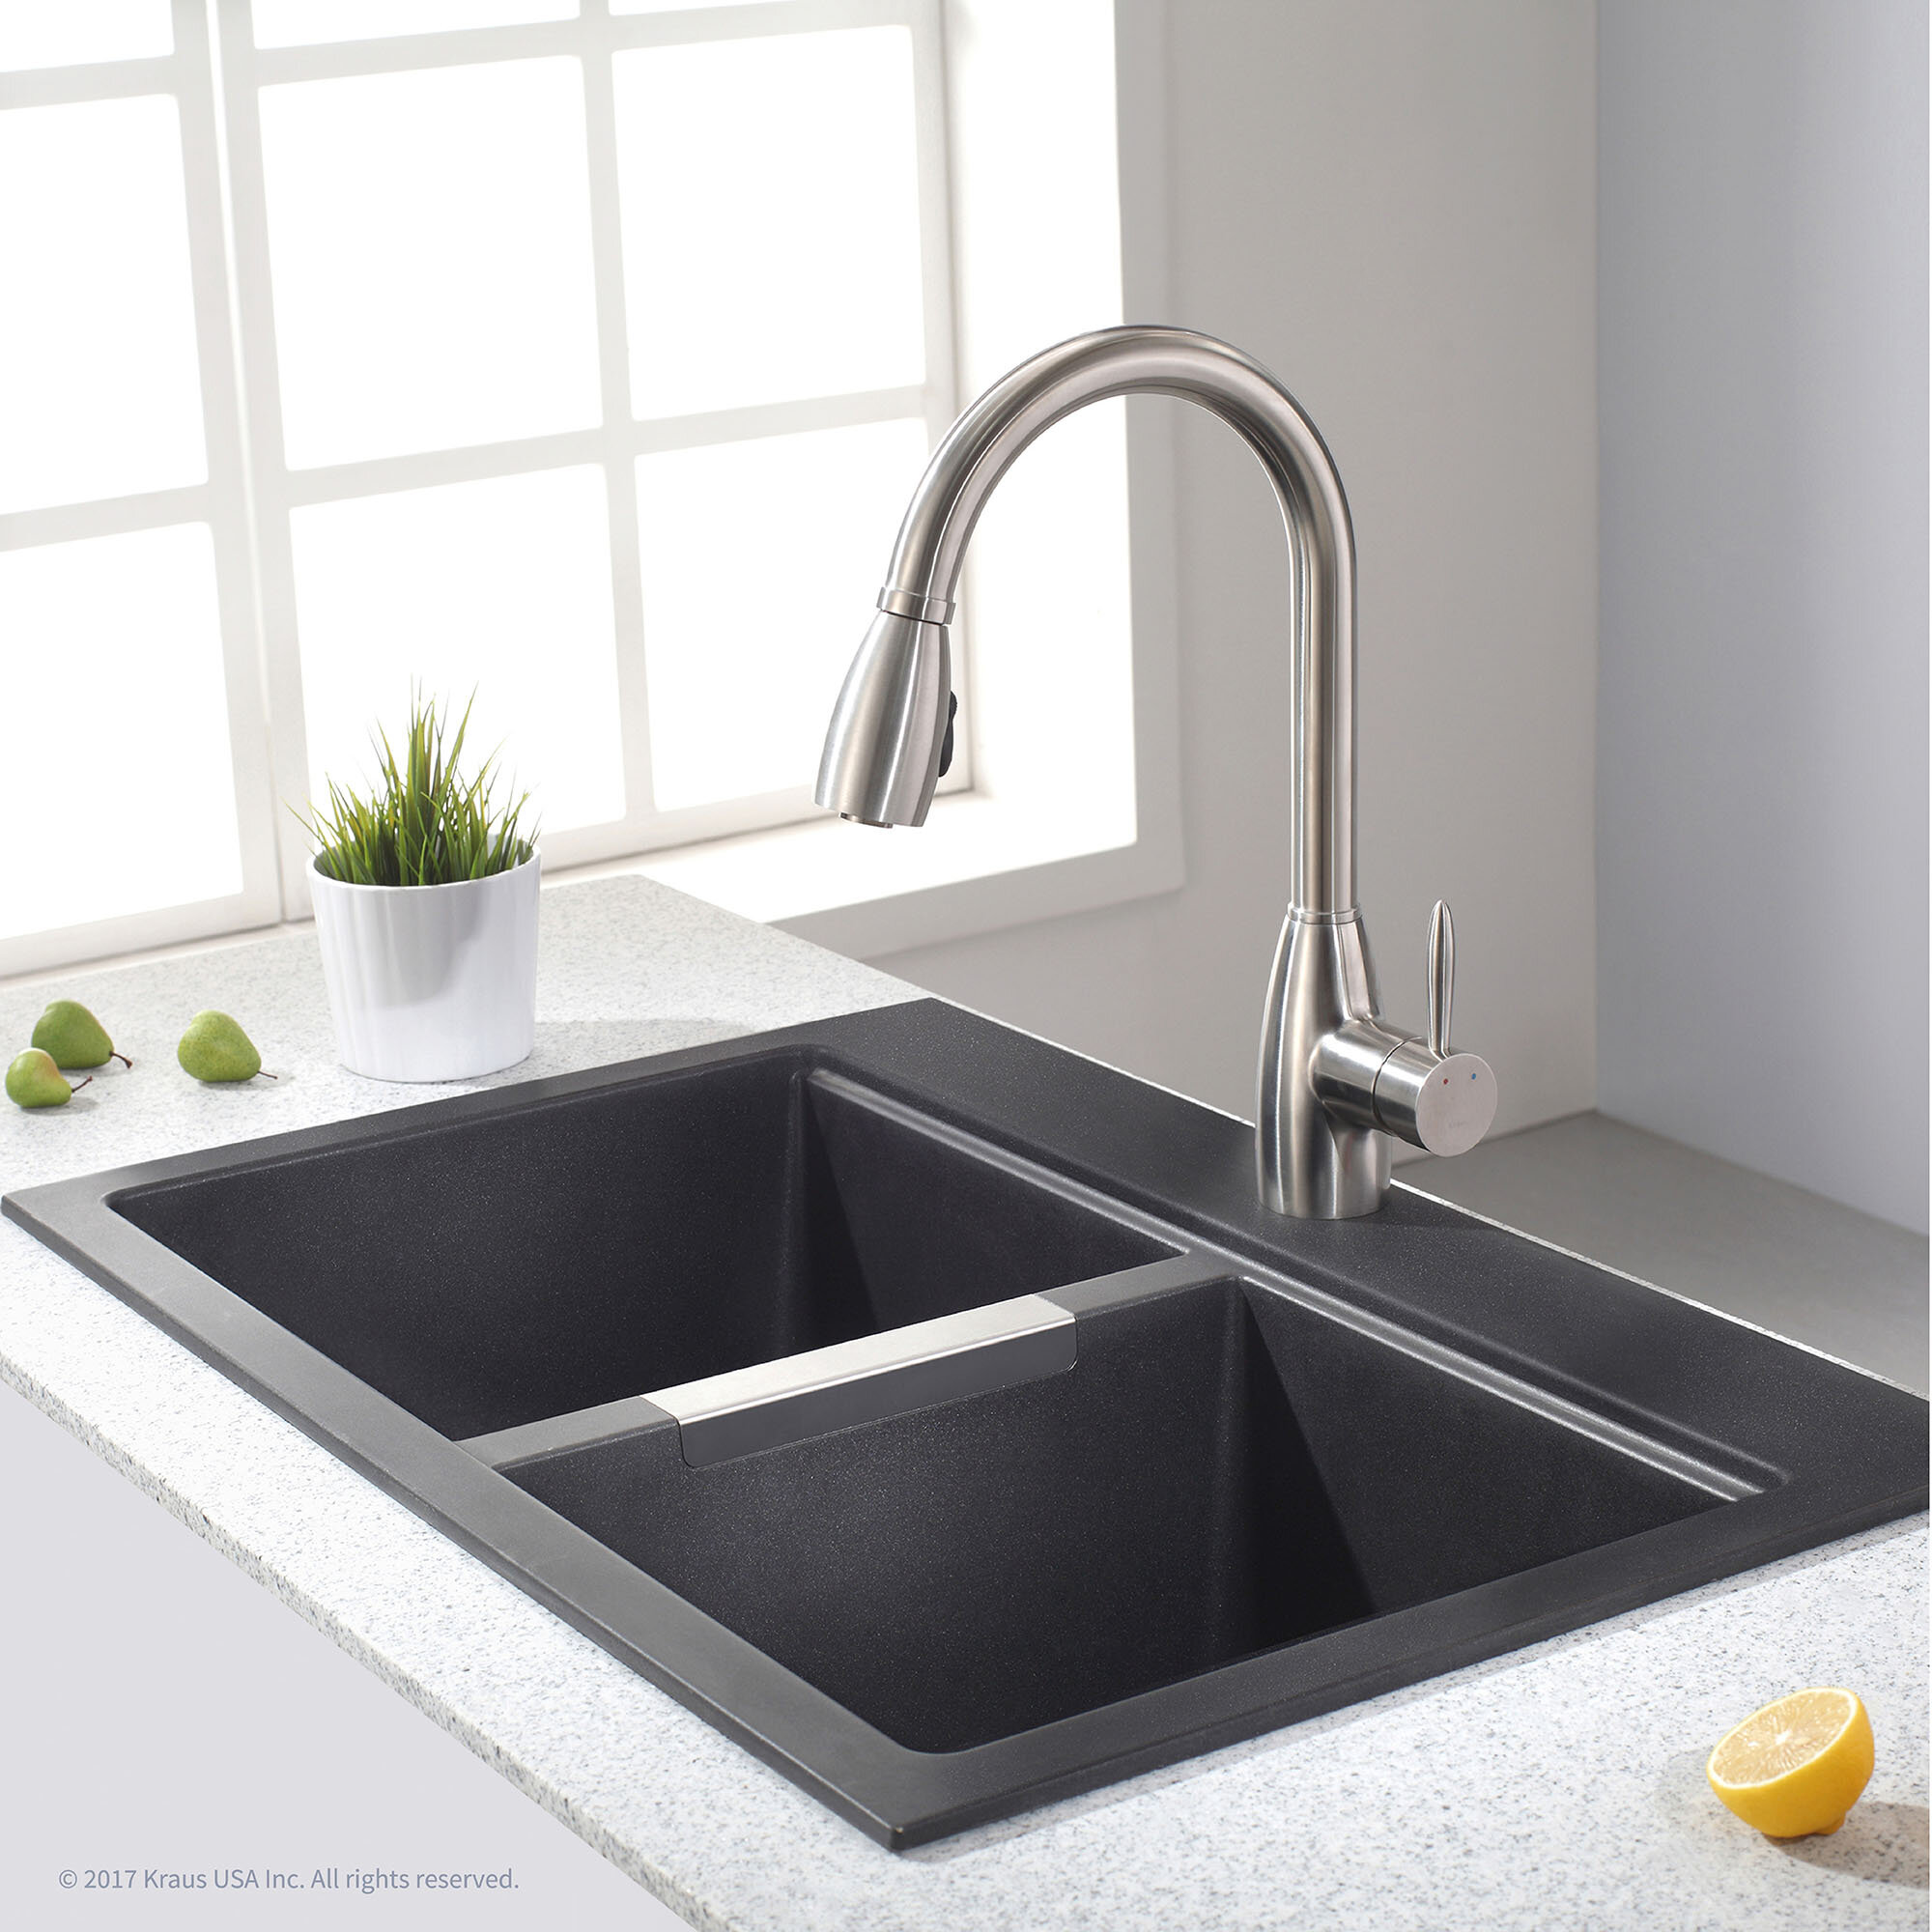 Kraus Granite 33 X 22 Double Basin Undermount Kitchen Sink